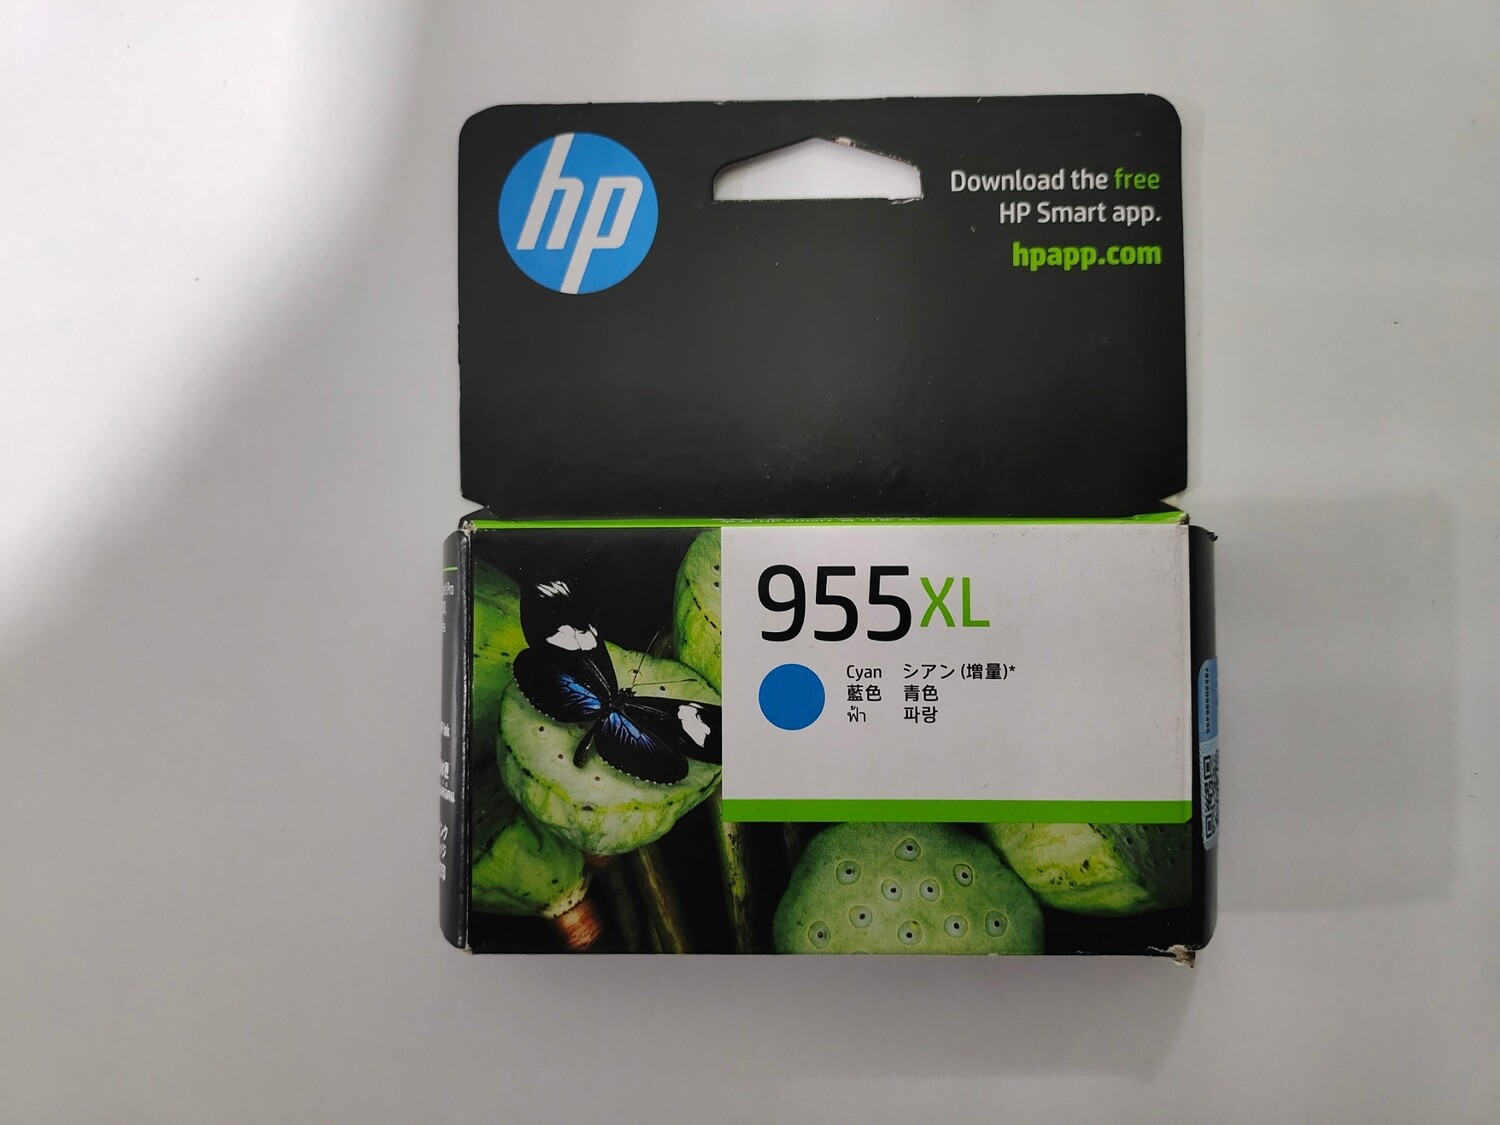 HP Officejet 955XL Cyan Ink Cartridge (L0S63AA)